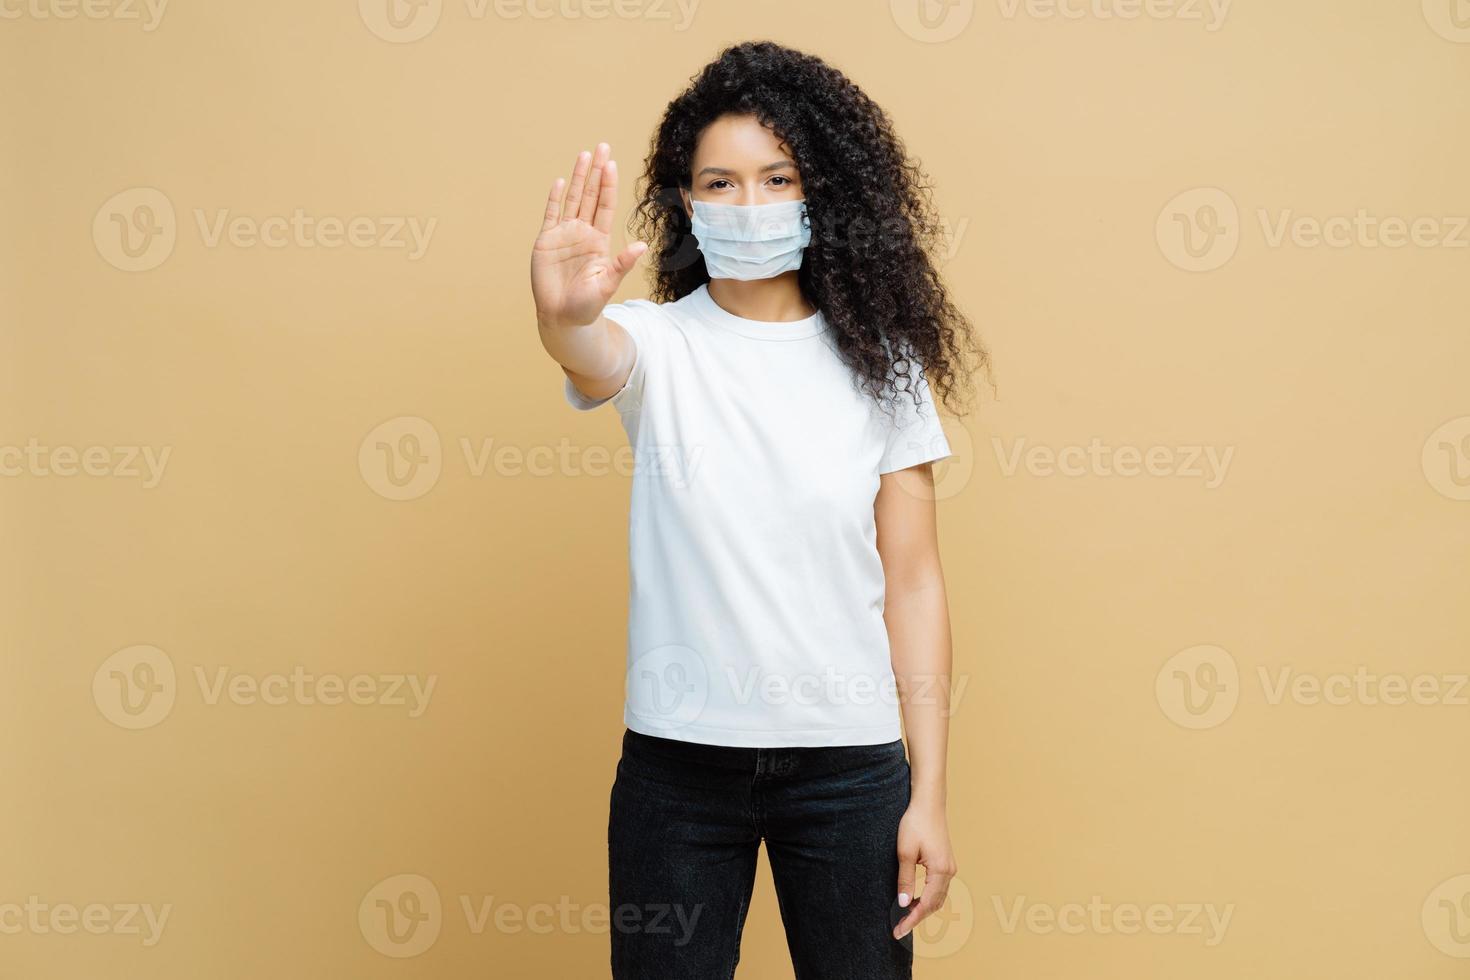 säga nej till att sprida sjukdomar. seriös afroamerikansk kvinna gör en stoppgest, bär medicinsk mask, förhindrar virus covid-19, står inomhus, isolerad. stoppa infektionssjukdomar omedelbart foto